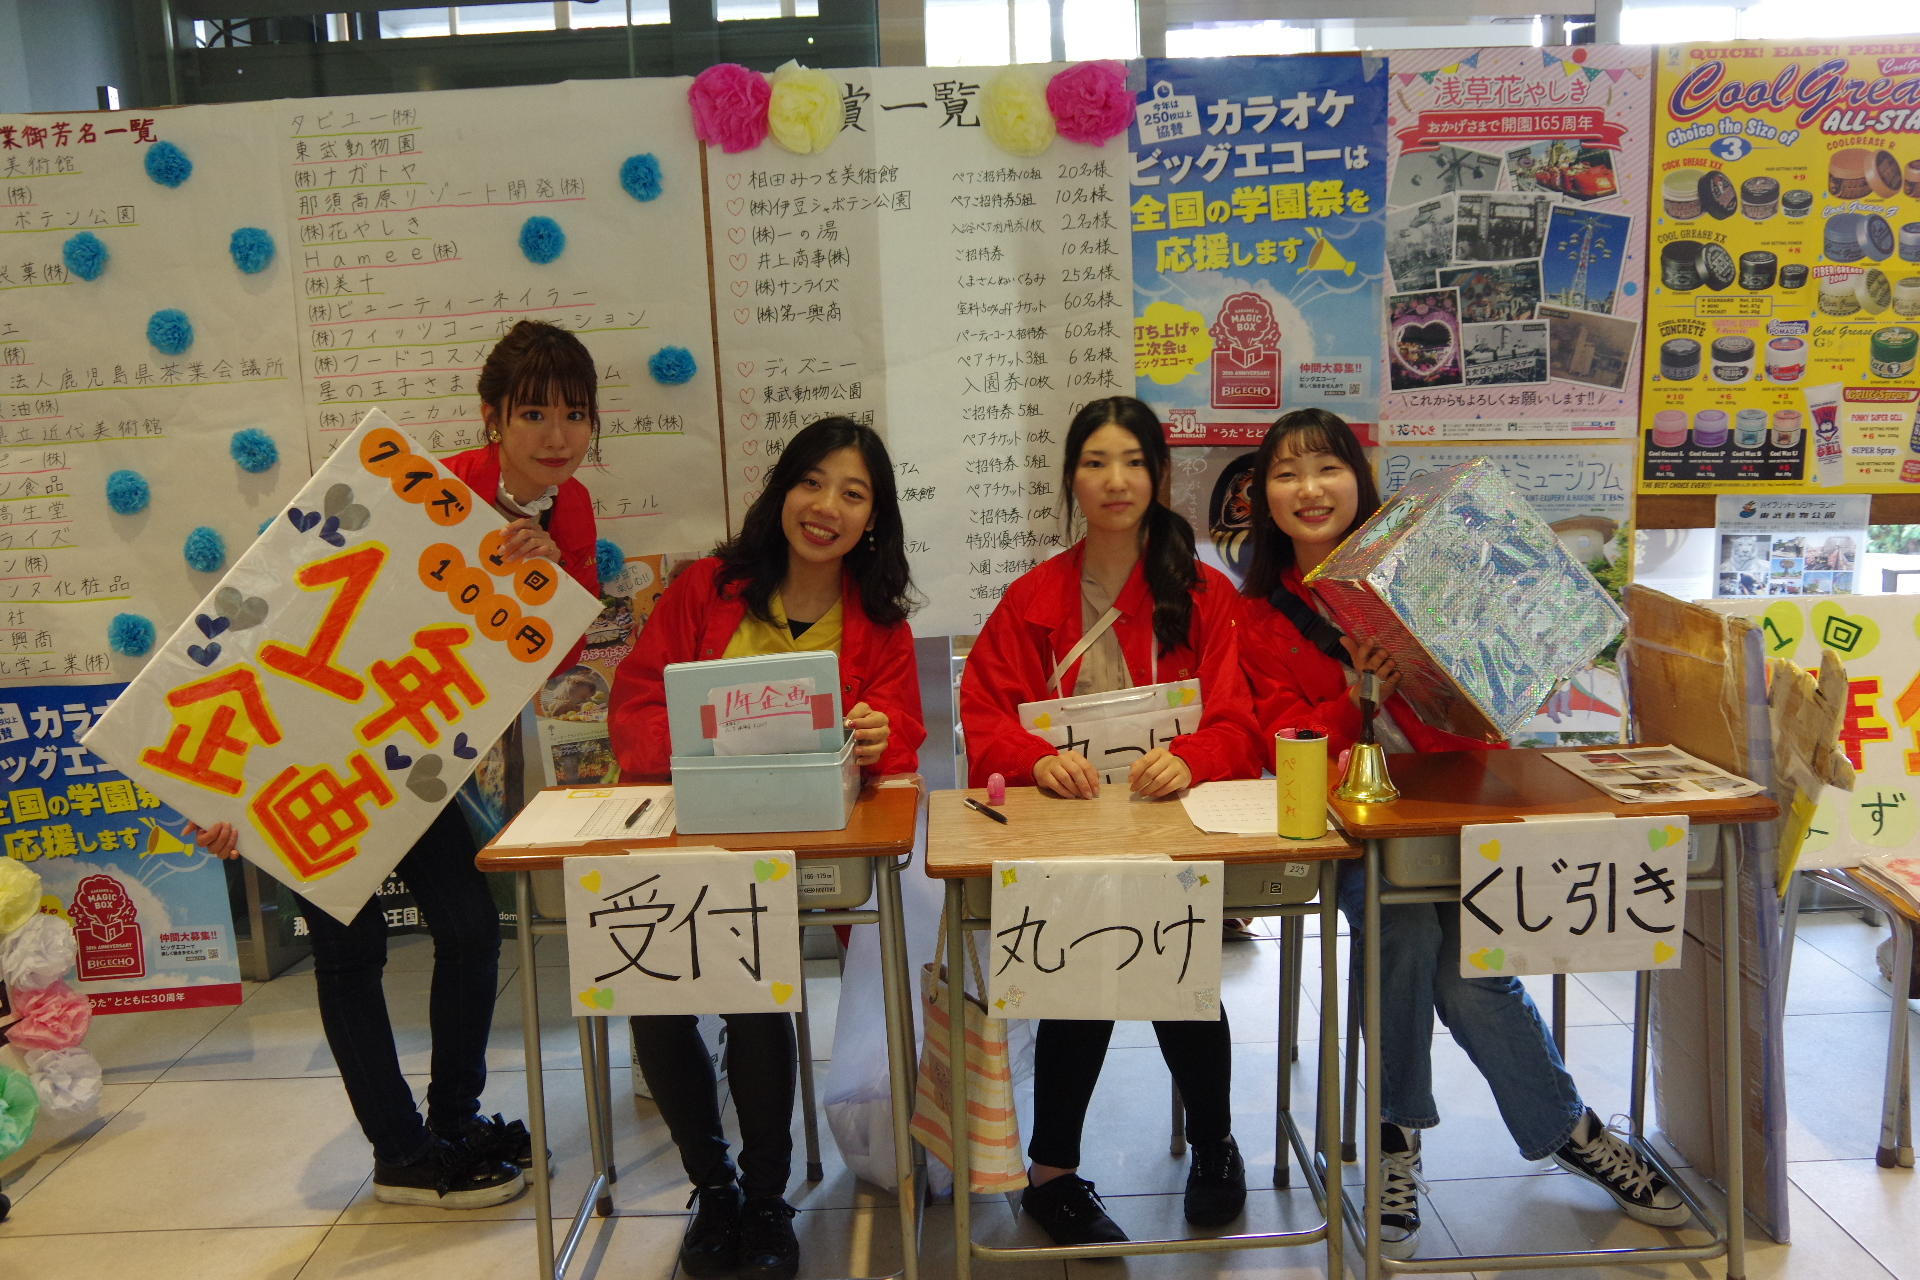 清泉女子大学が11月2・3日に「第60回清泉祭」を開催 -- オープンキャンパスも同日開催